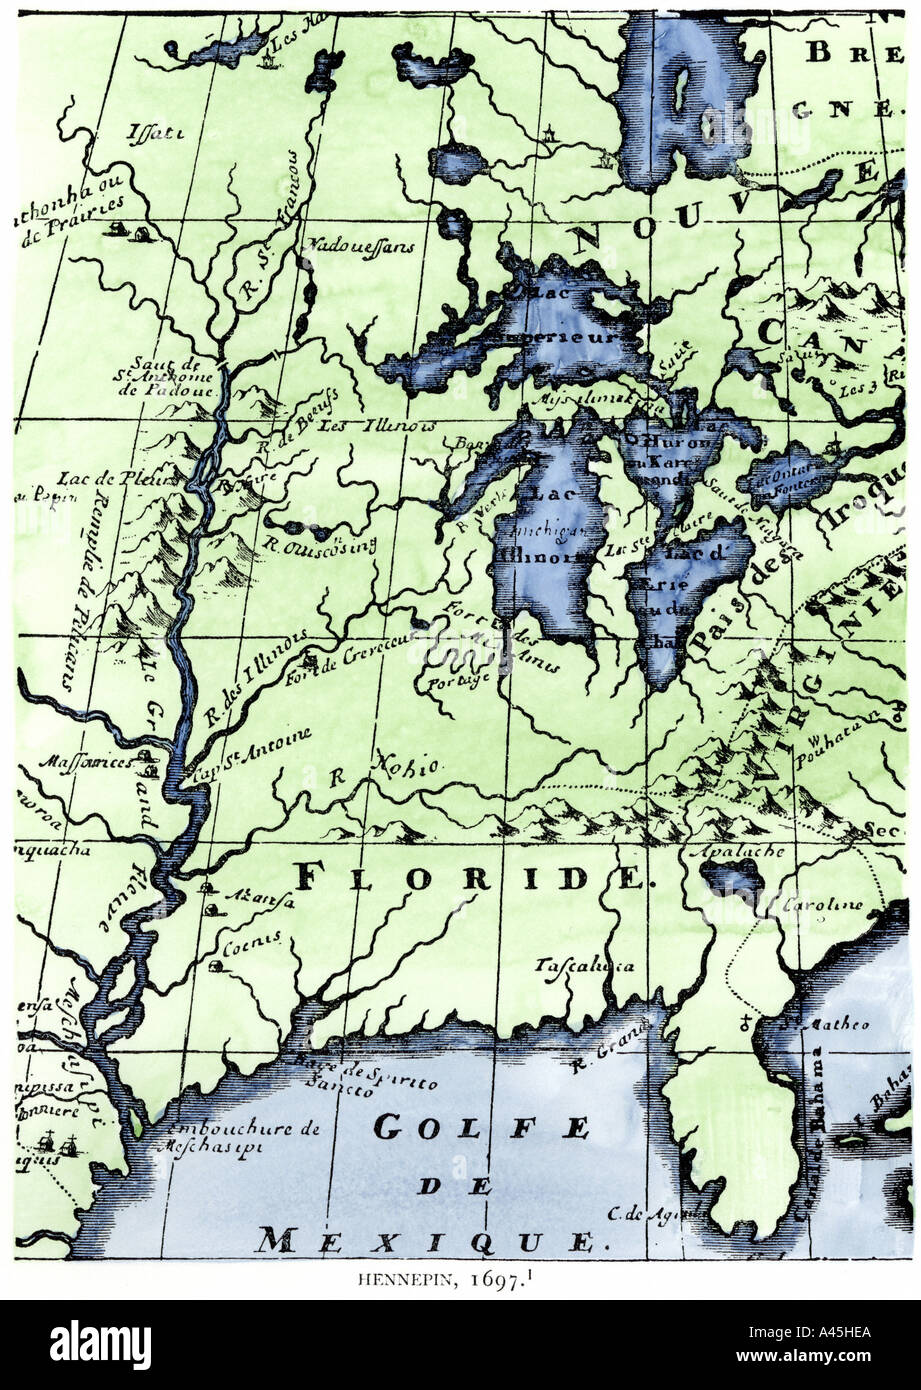 Missionario francese Louis Hennepin mappa del Mississippi River Valley e grandi laghi dopo LaSalle expeditions 1697. Colorate a mano la xilografia Foto Stock